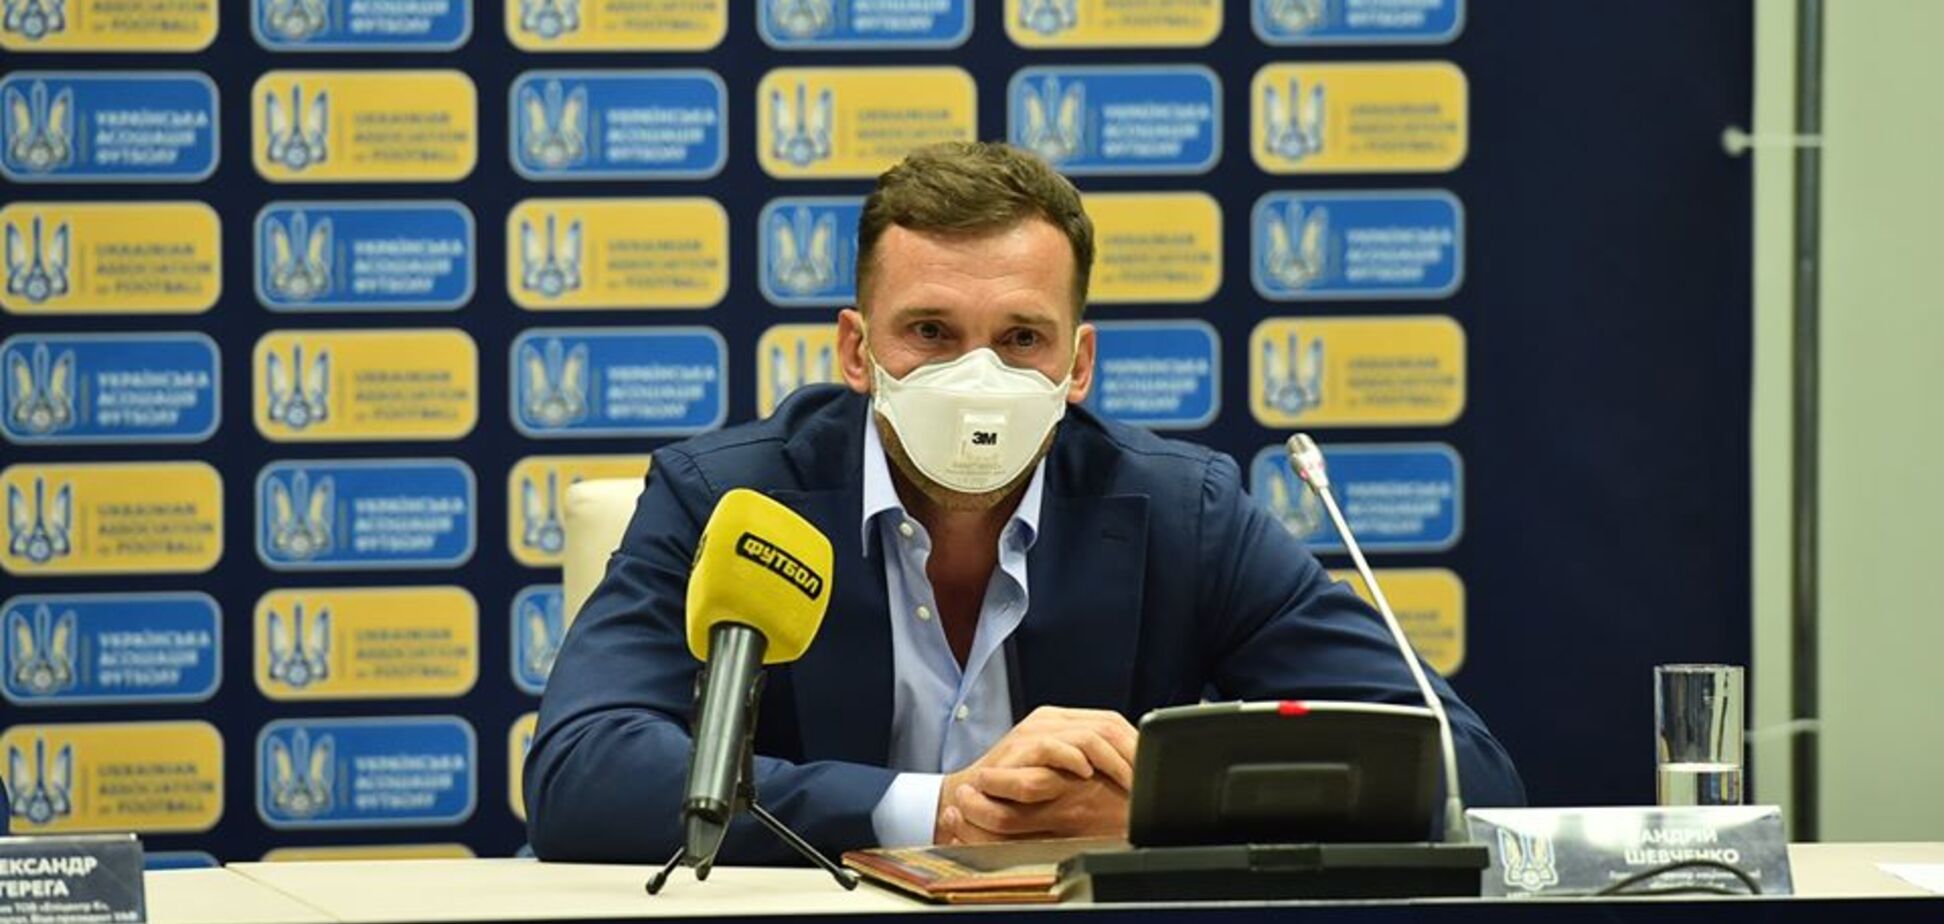 Принято официальное решение по контракту Шевченко и сборной Украины